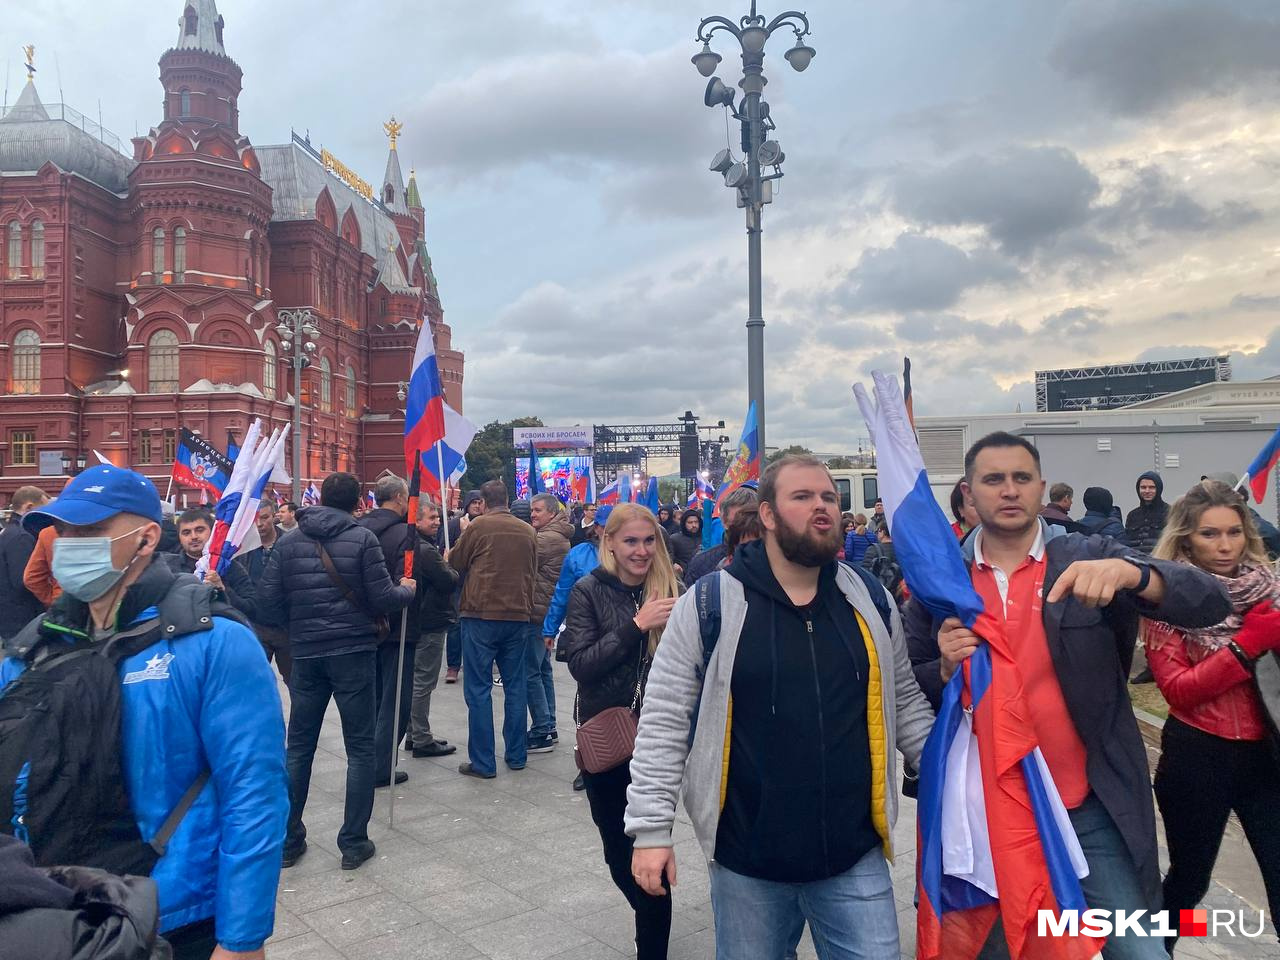 Какой митинг в москве. Митинг на Манежной. Митинг в центре Москвы. Фото людей в Москве. Митинги в Москве сейчас.